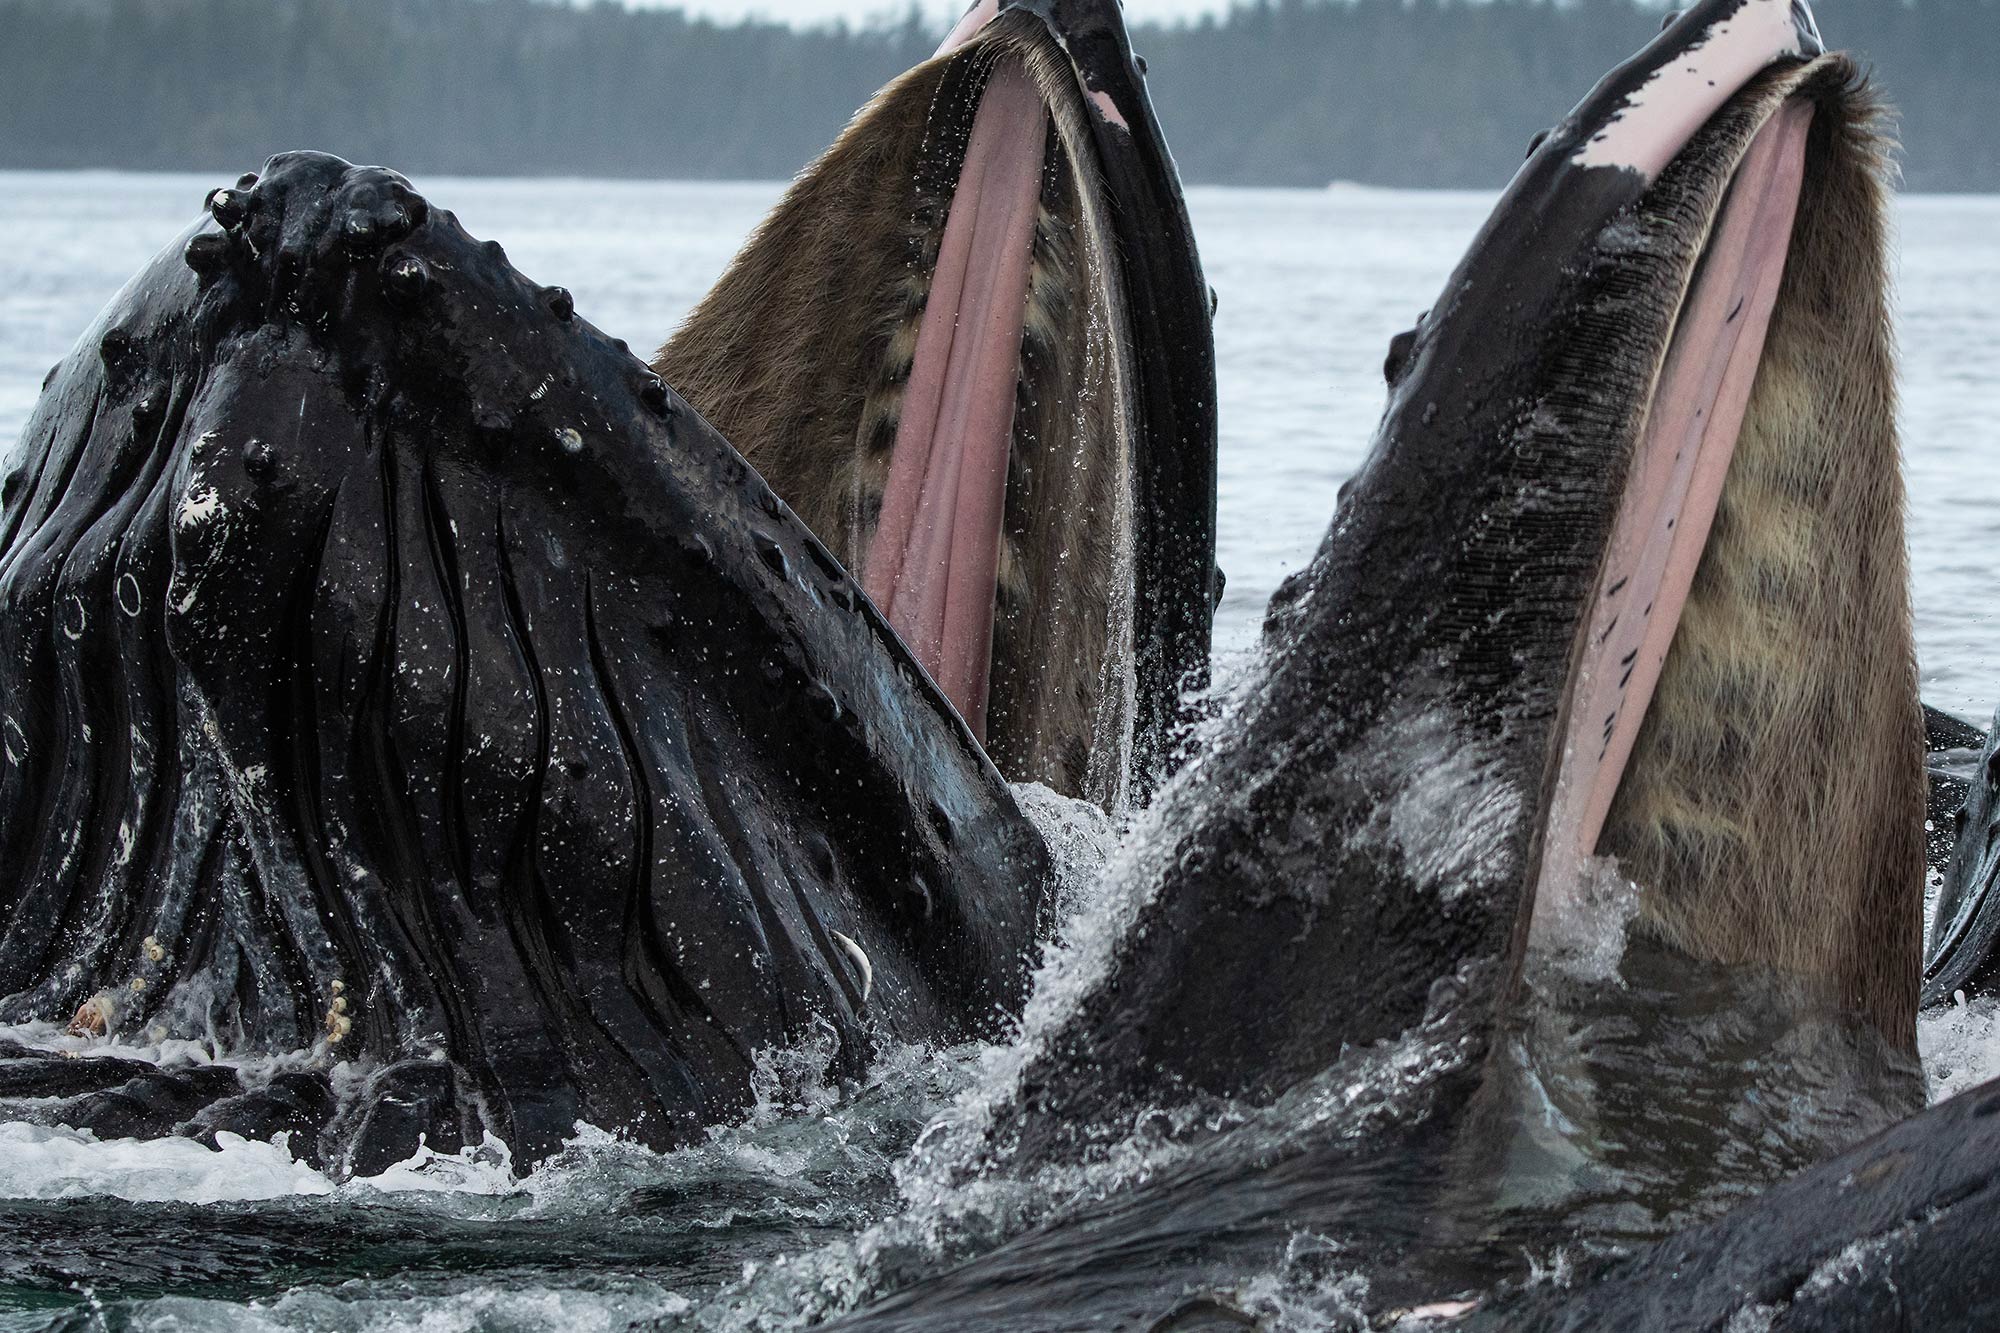 Bubble-feeding humpback whale, Alaska.